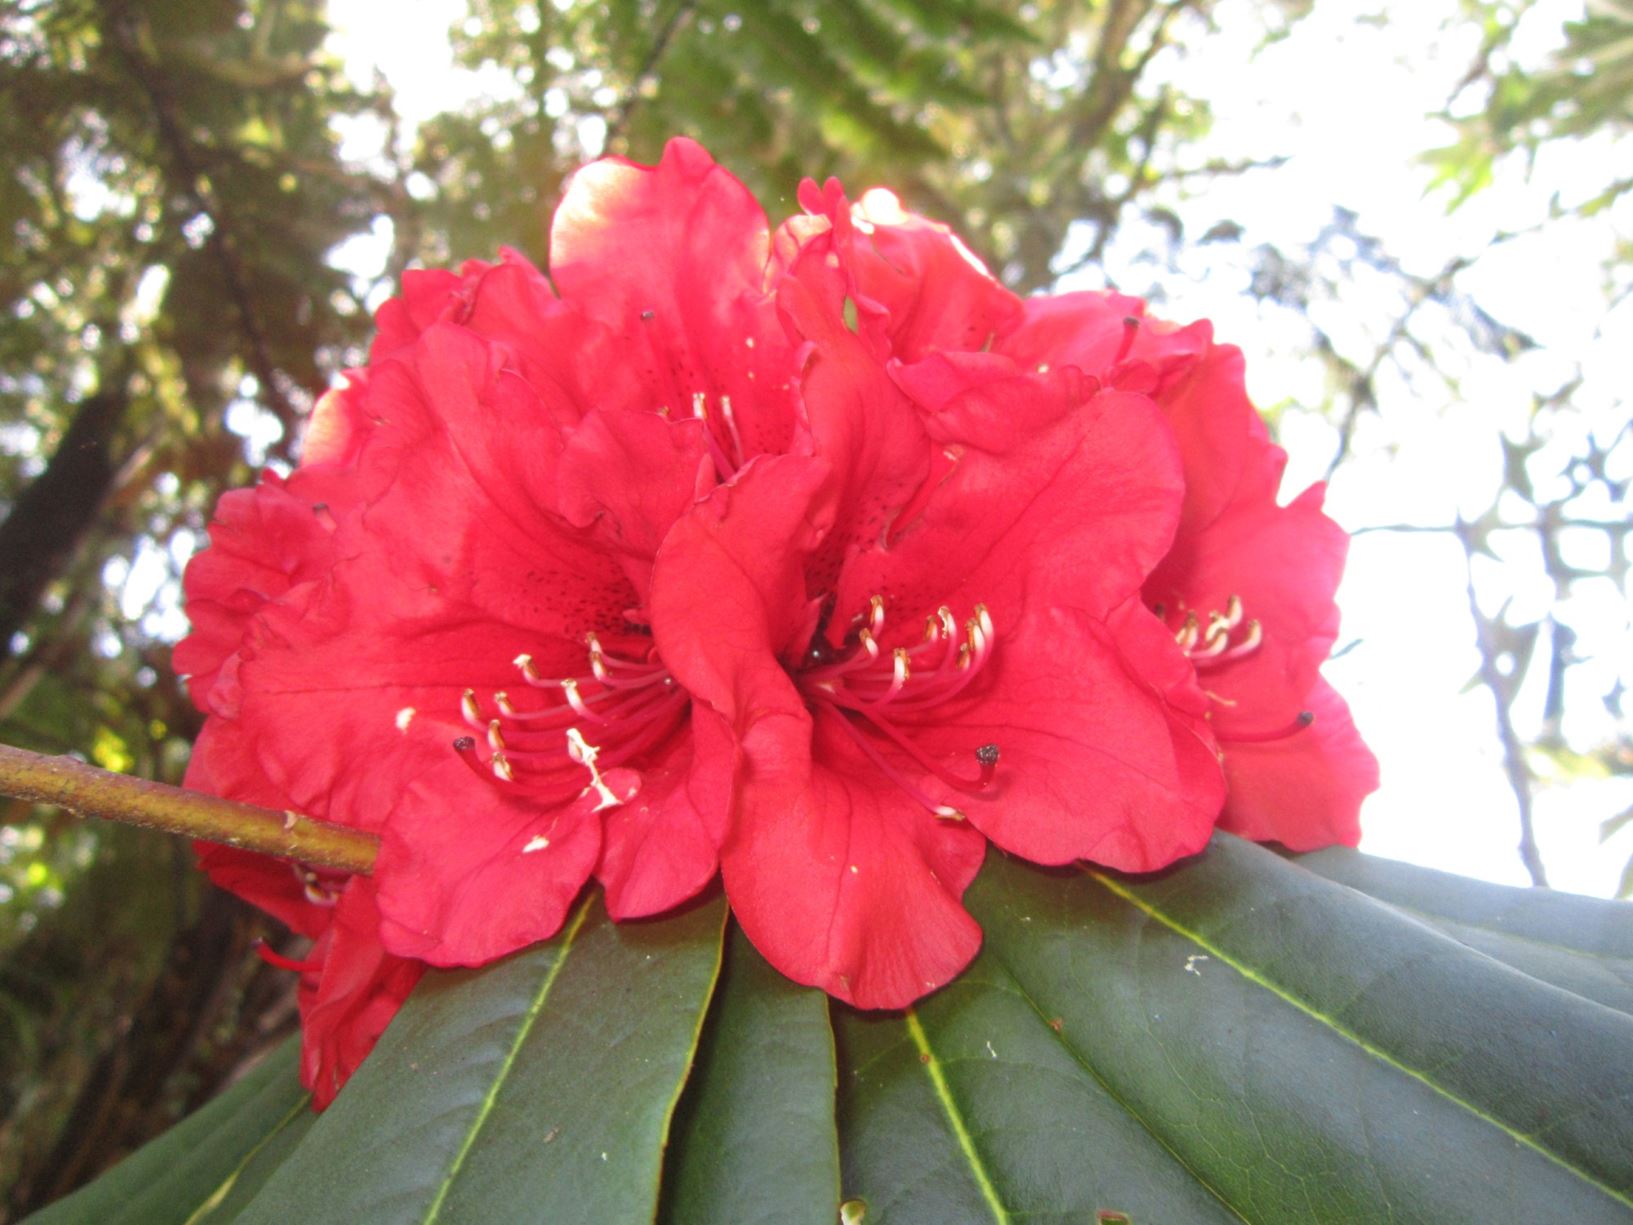 Rhododendron arboreum subsp. delavayi × R. 'Kilimanjaro'